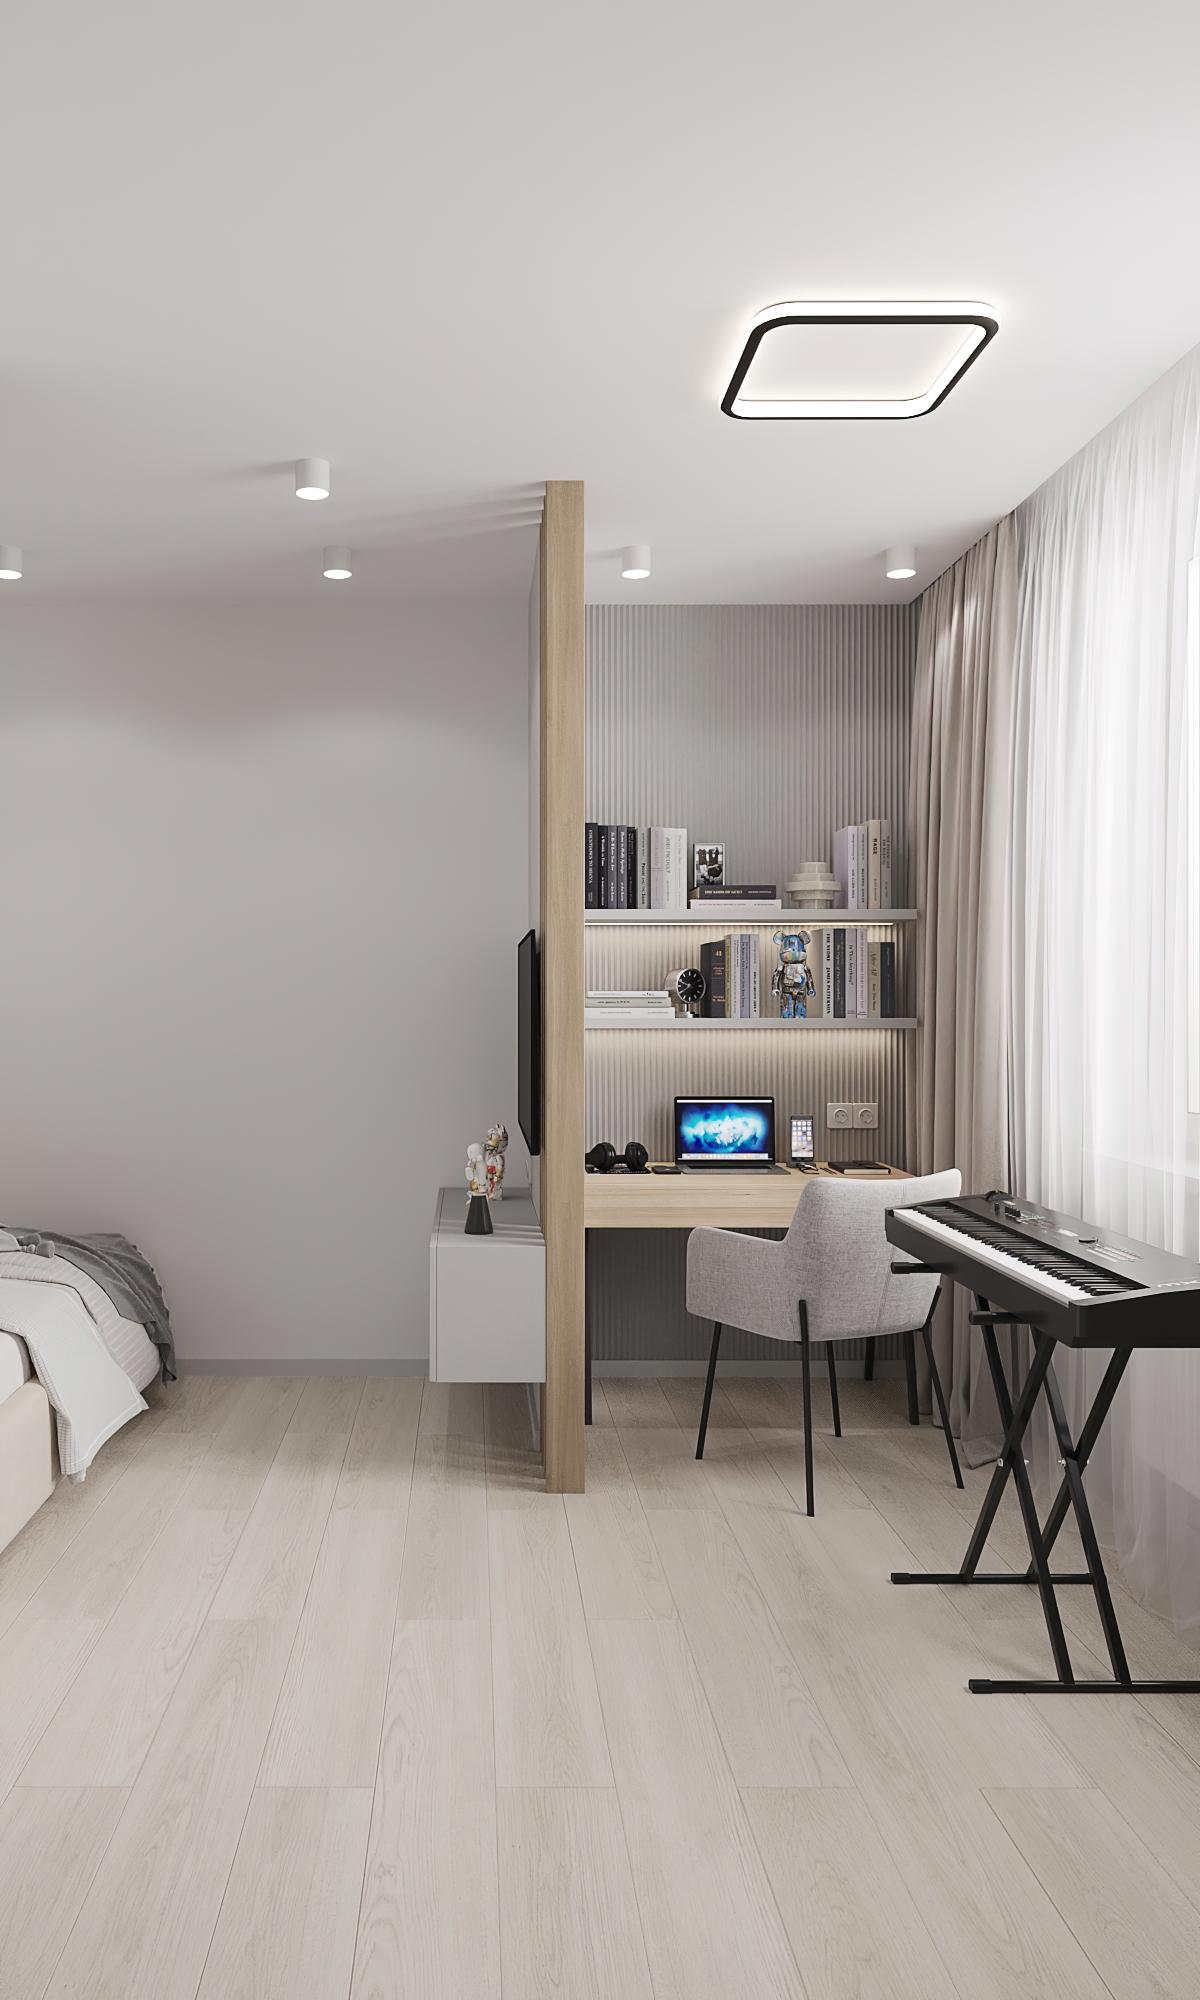 Интерьер спальни c рабочим местом, подсветкой настенной, подсветкой светодиодной, светильниками над кроватью и с подсветкой